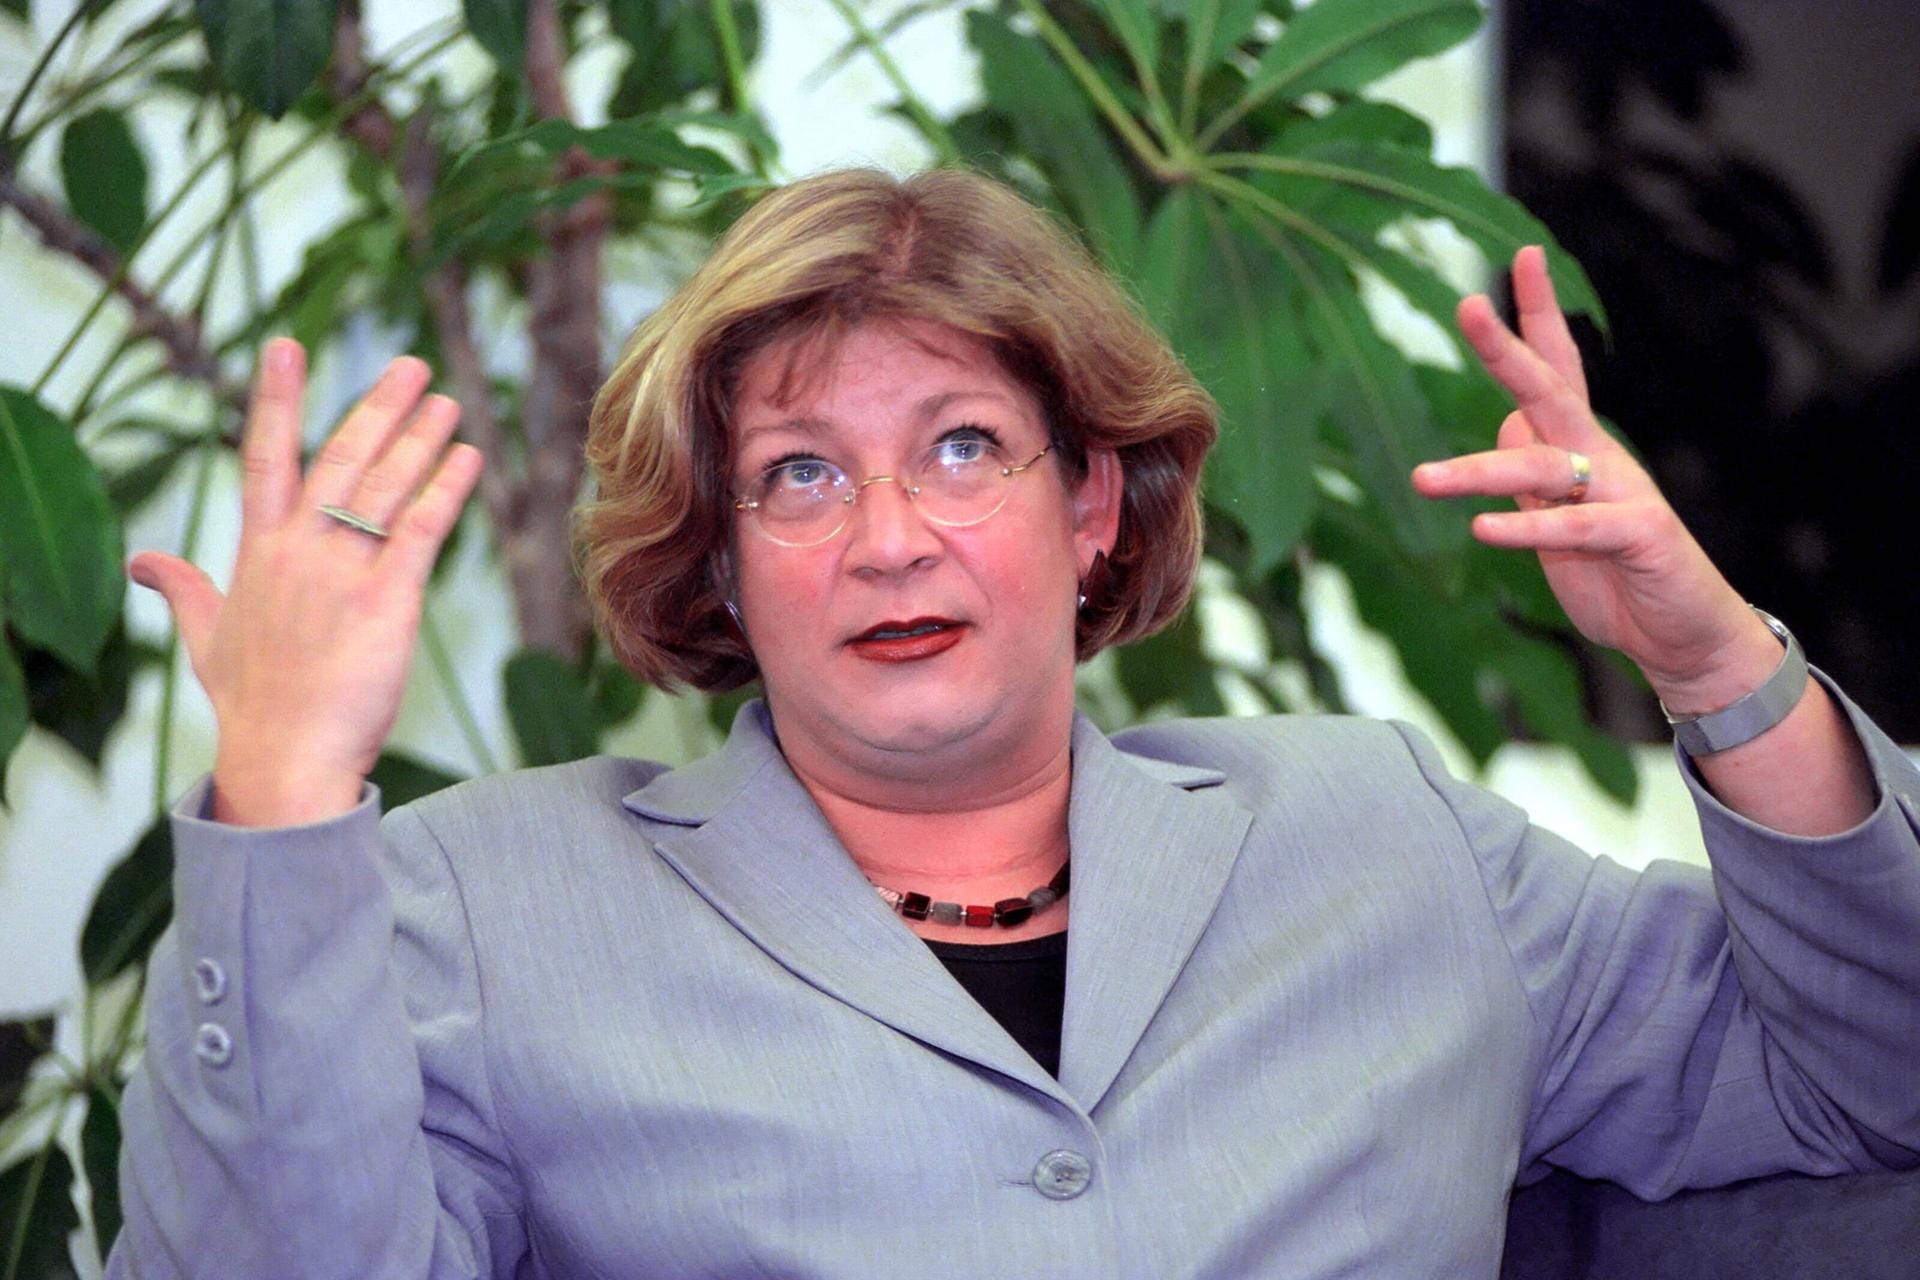 Andrea Fischer (Grüne), 2001: Die Gesundheitsministerin musste in der BSE-Krise gehen, der Zeit des Rinderwahns. Aber auch wegen massiven Drucks in der Partei, wie sie später betont.